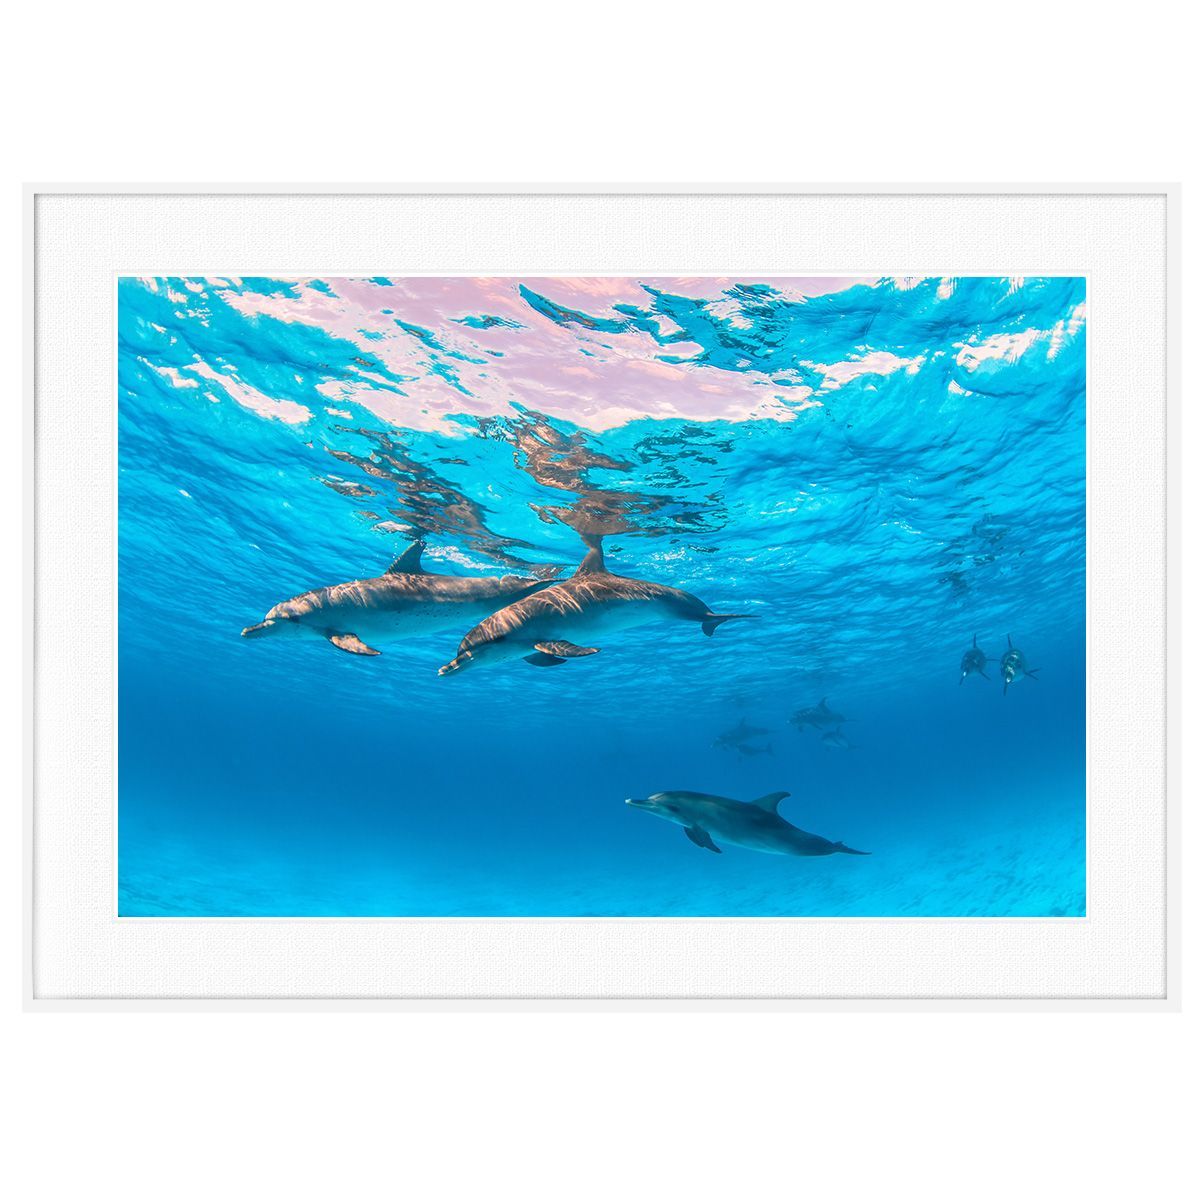 夏写真 バハマ諸島ビミニ諸島のイルカ インテリアアートポスター写真